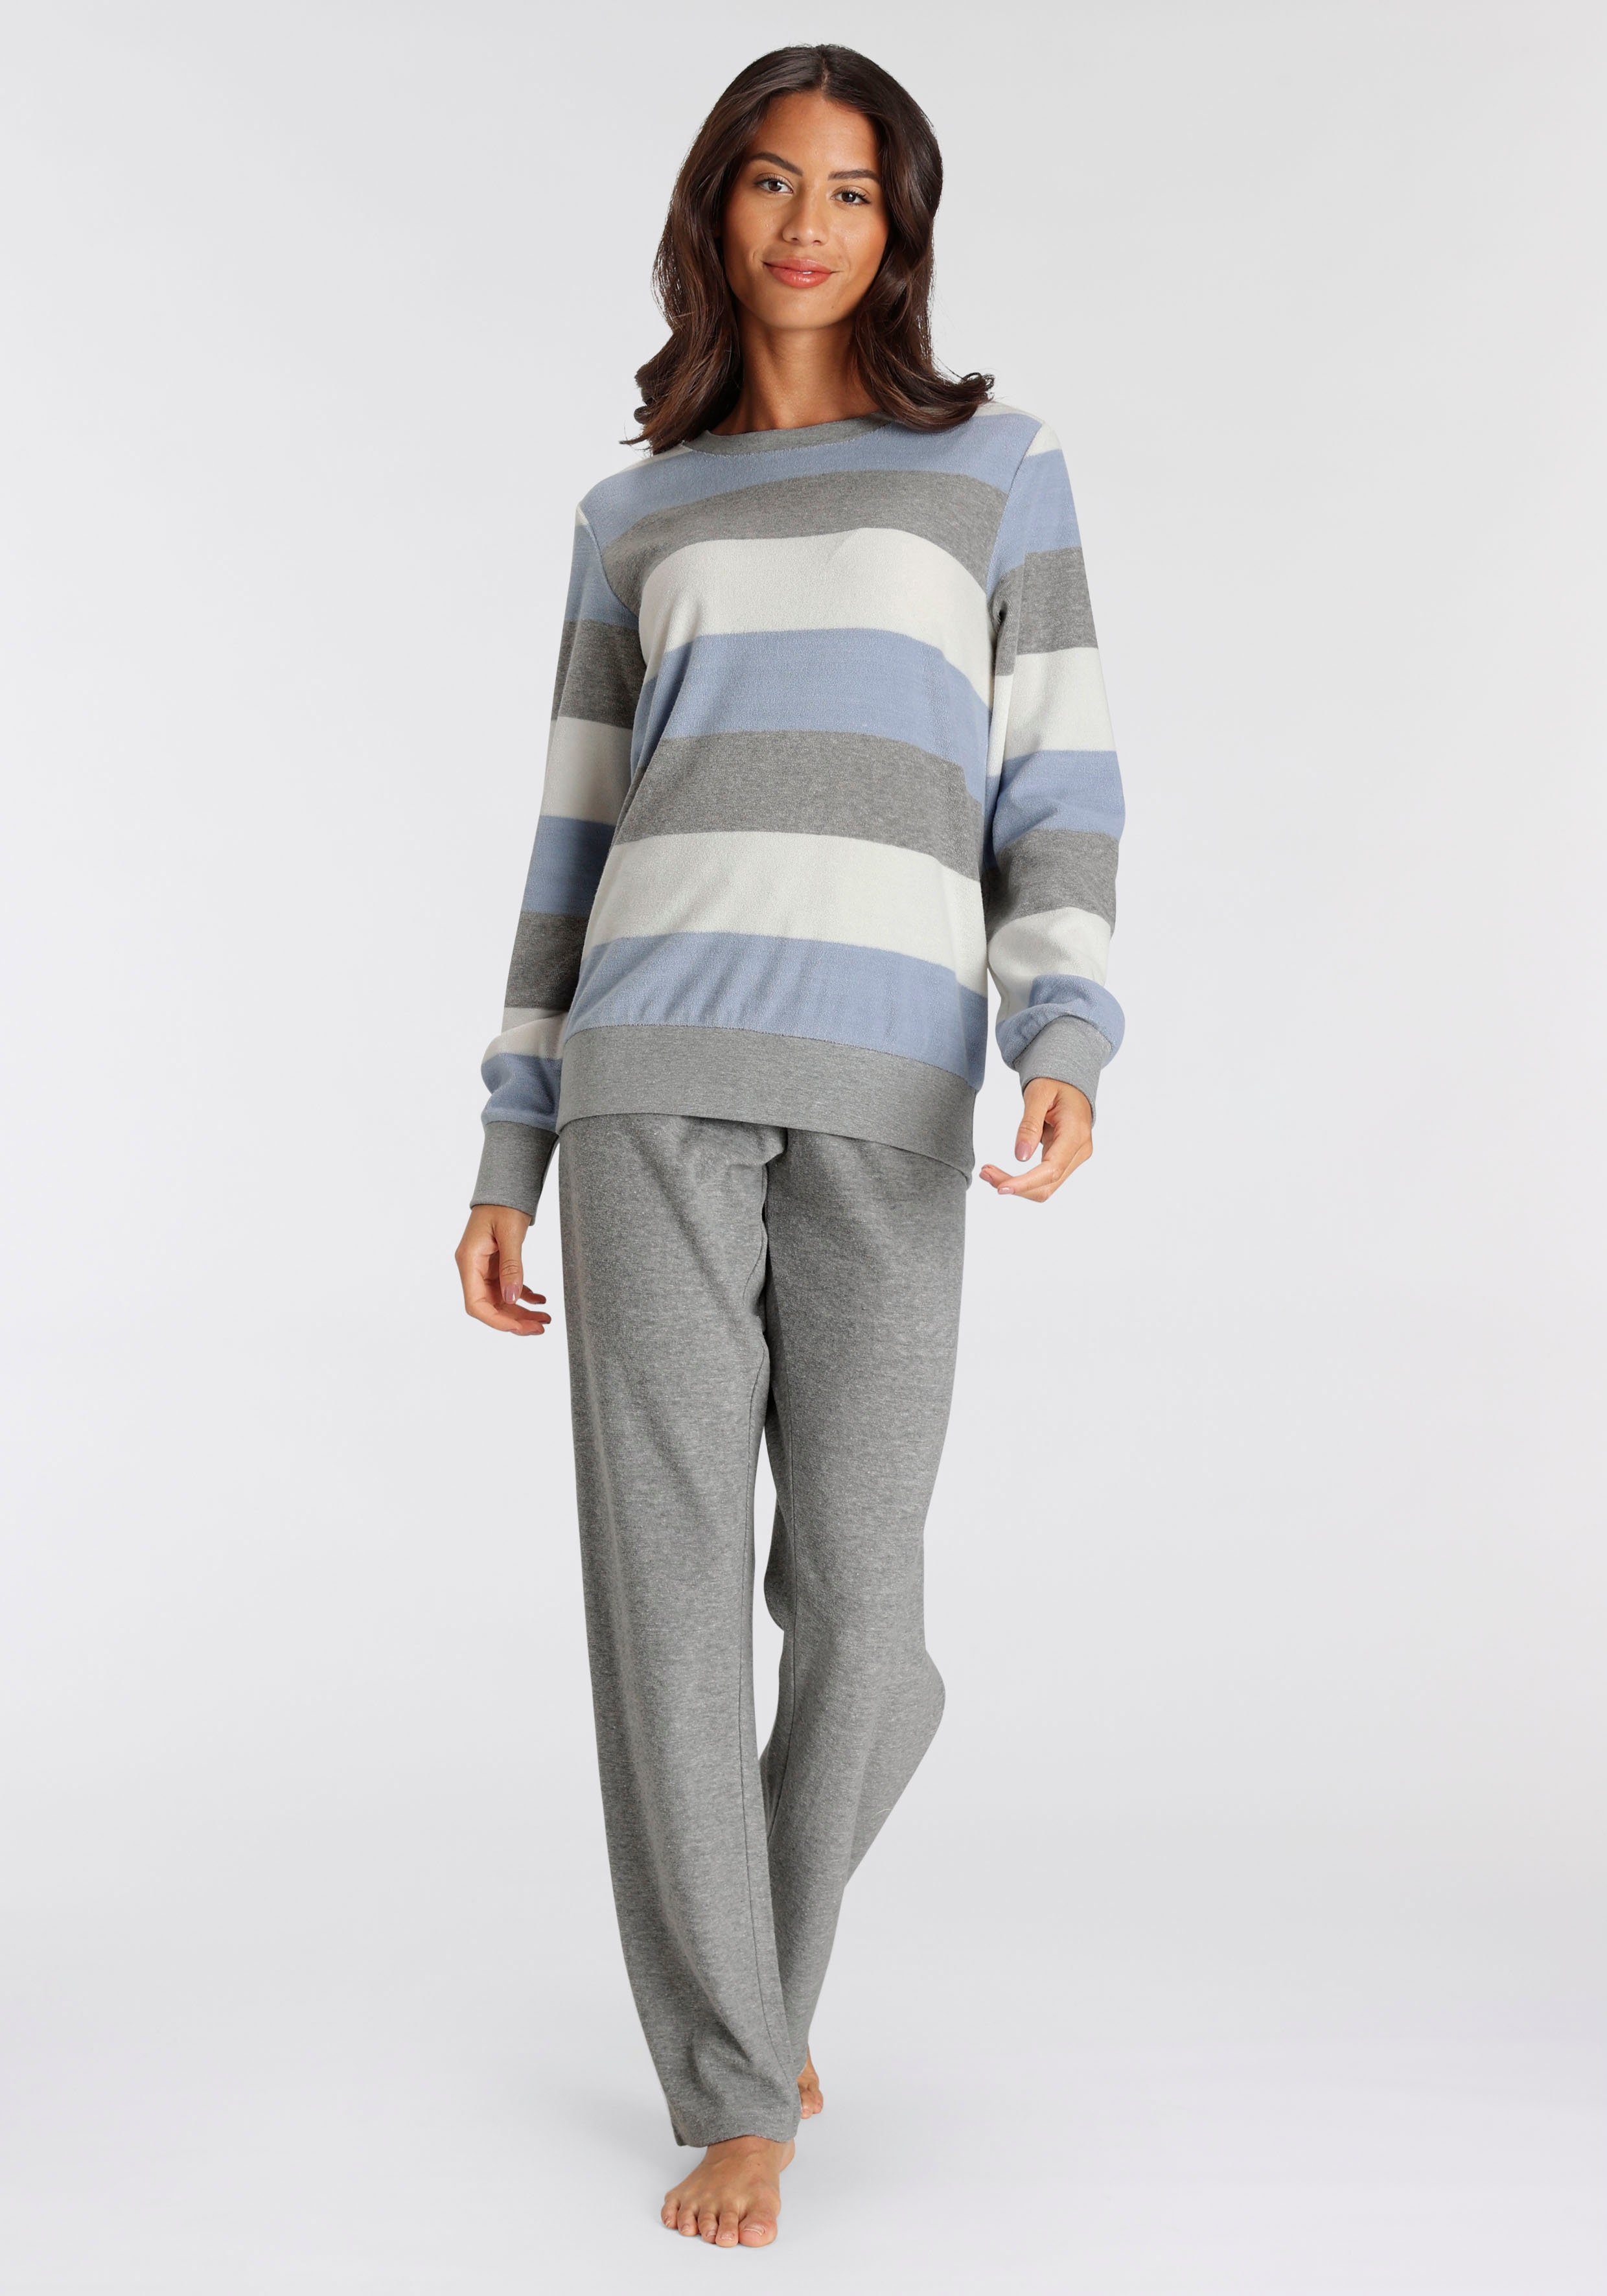 Outlet-Besonderheit Vivance Dreams Pyjama (2 tlg) und Frottée Colorblock weichem Streifen grau-blau mit aus